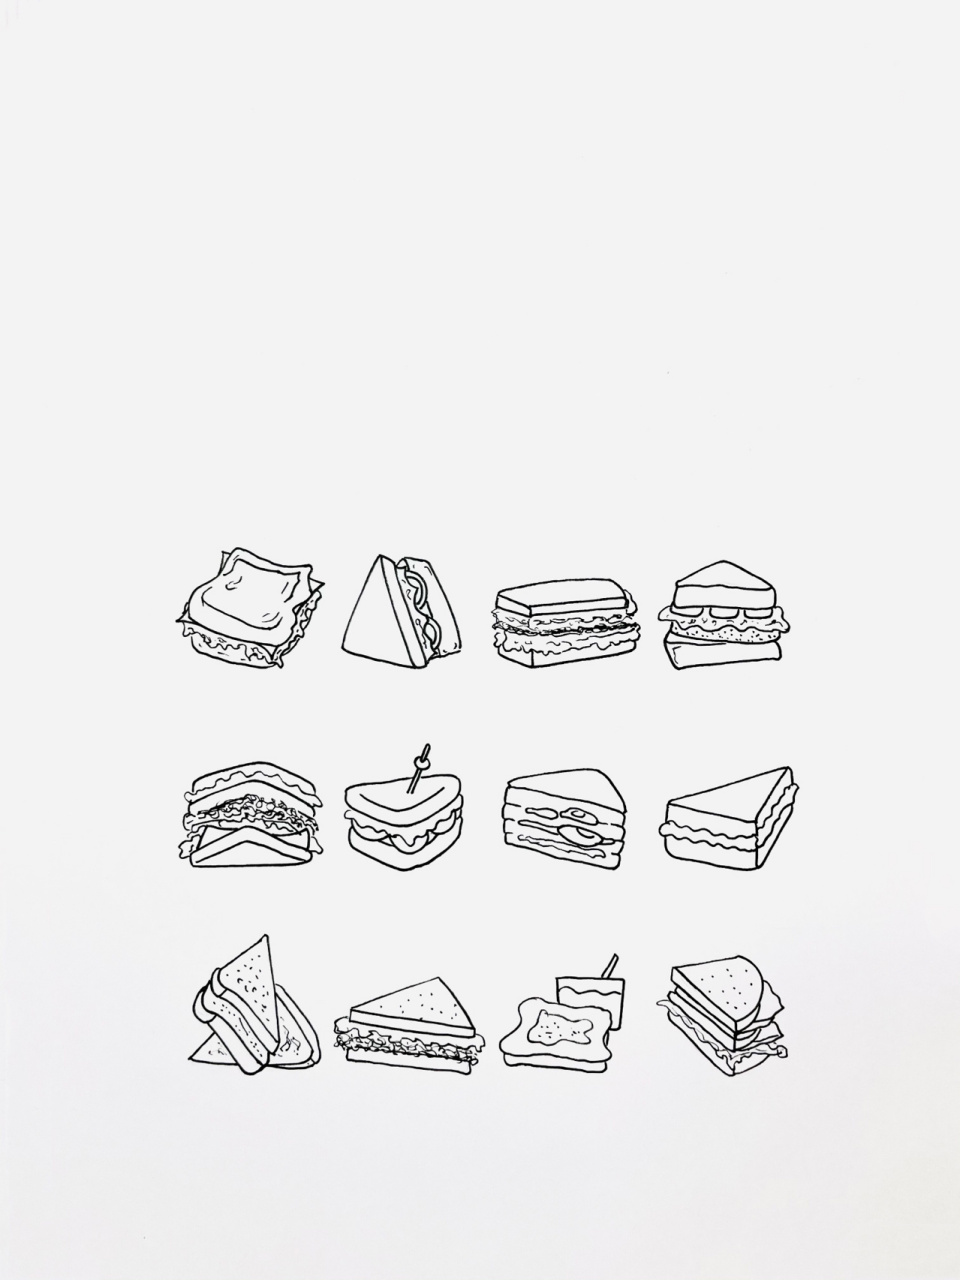 【简笔画】三明治00 分享一组美食简笔画—三明治00 我的最爱之一